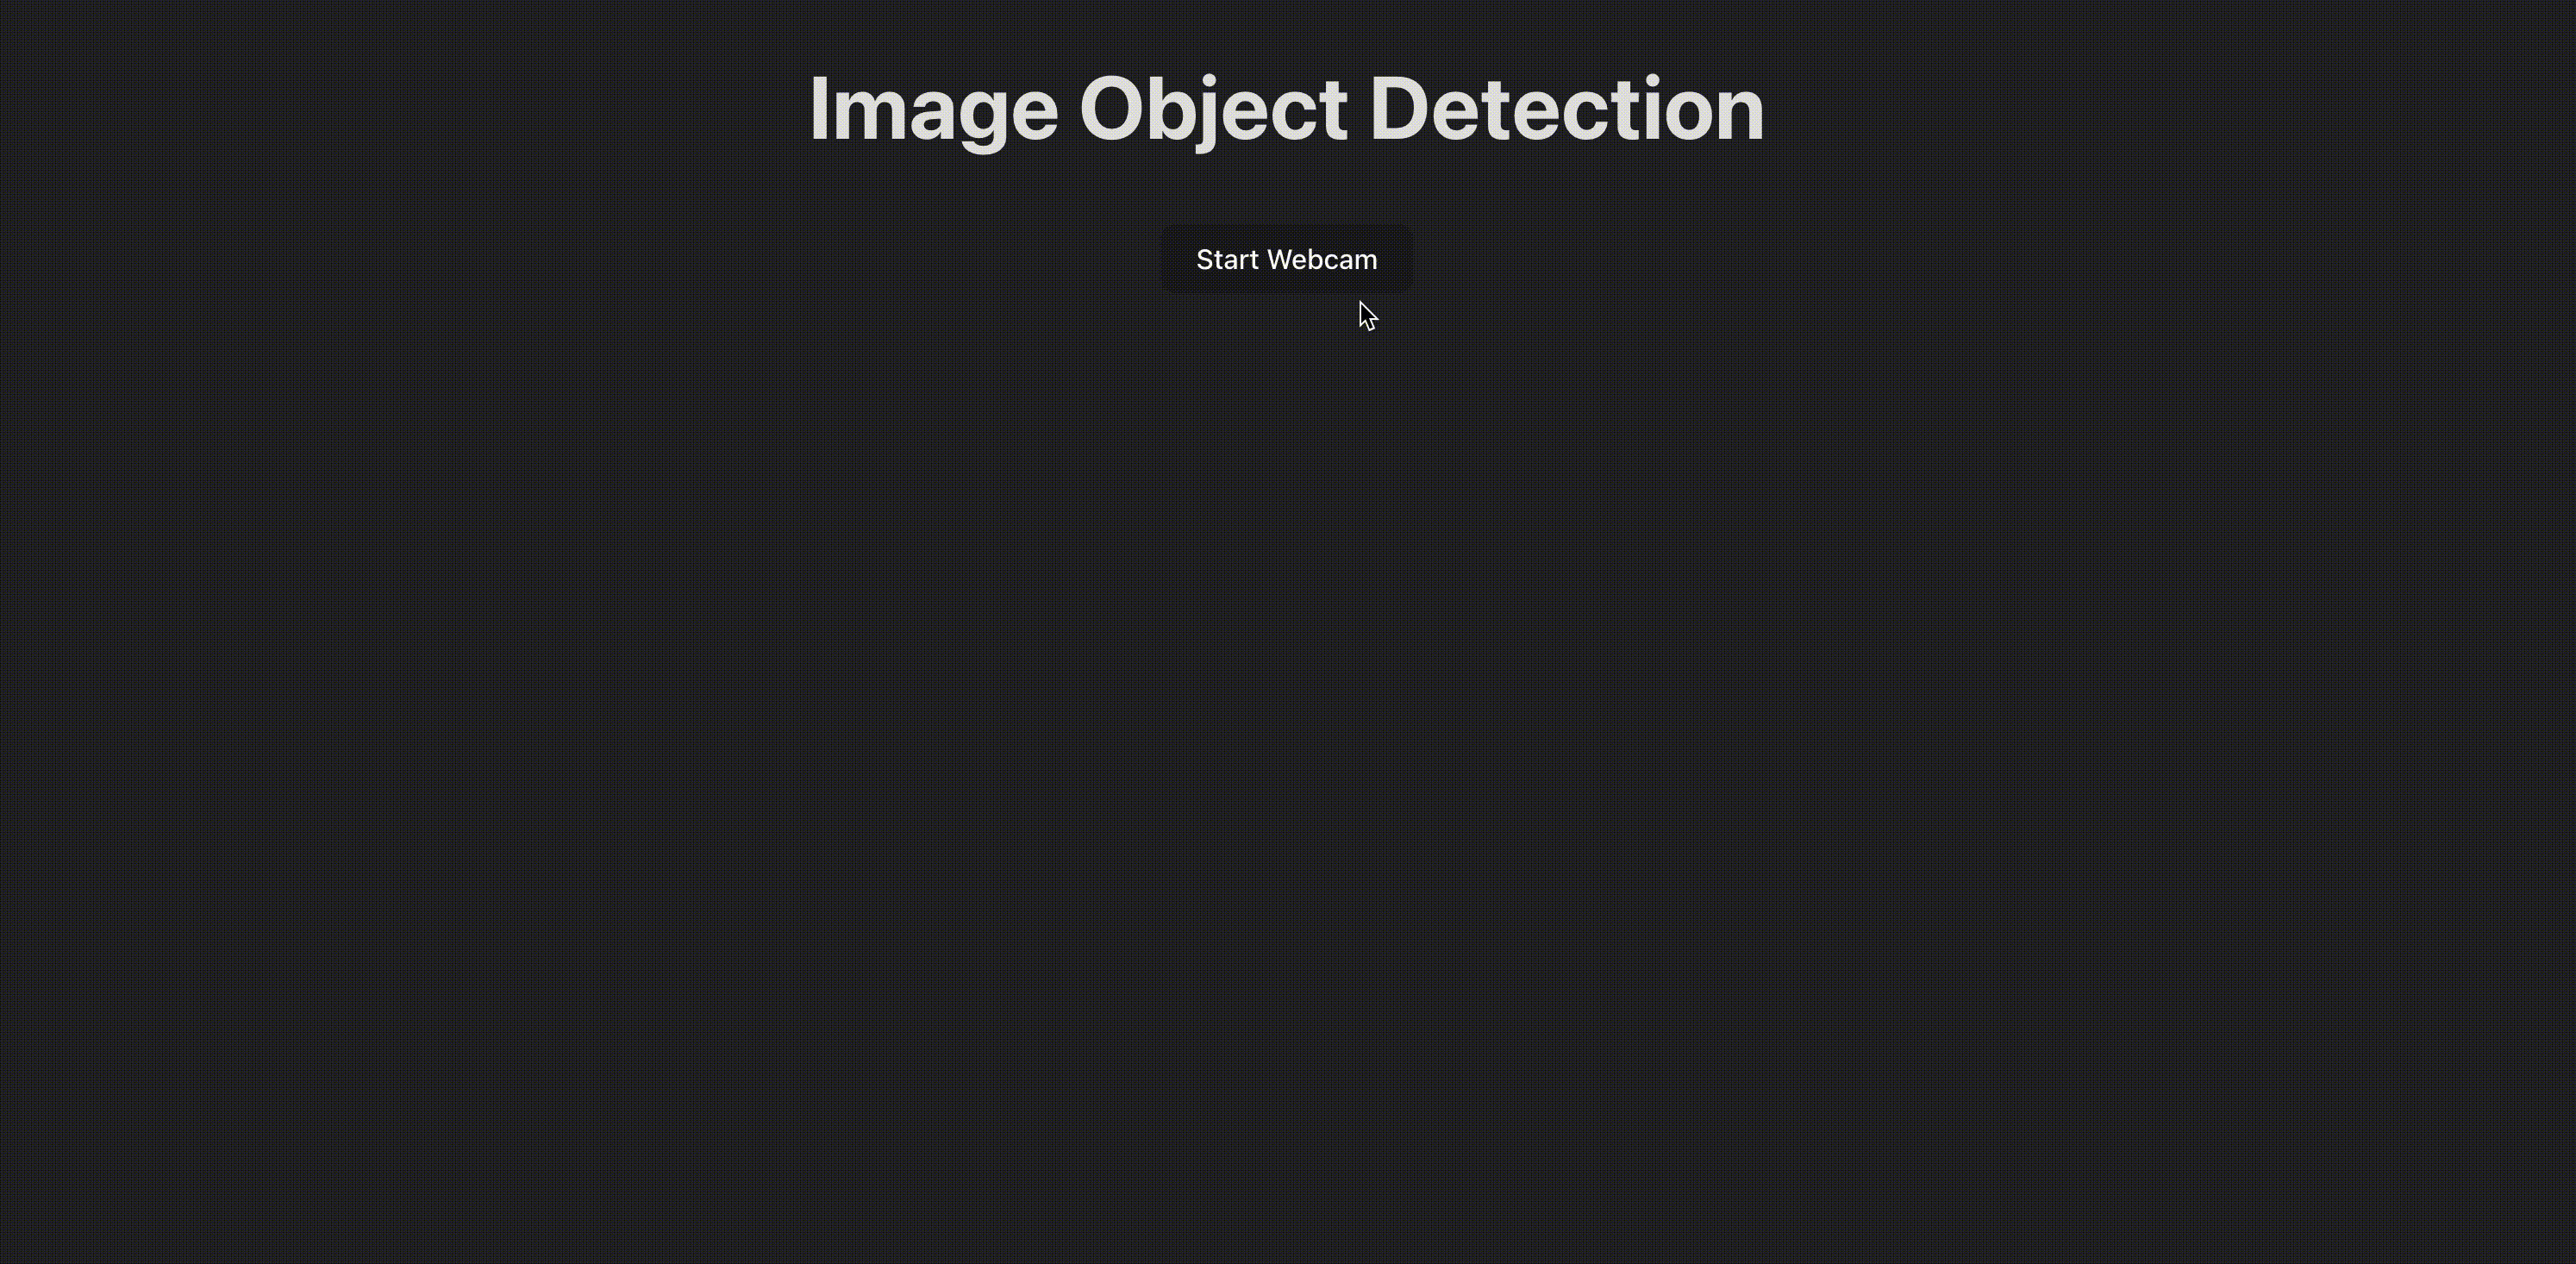 Demonstração da detecção de objetos em tempo real usando a webcam